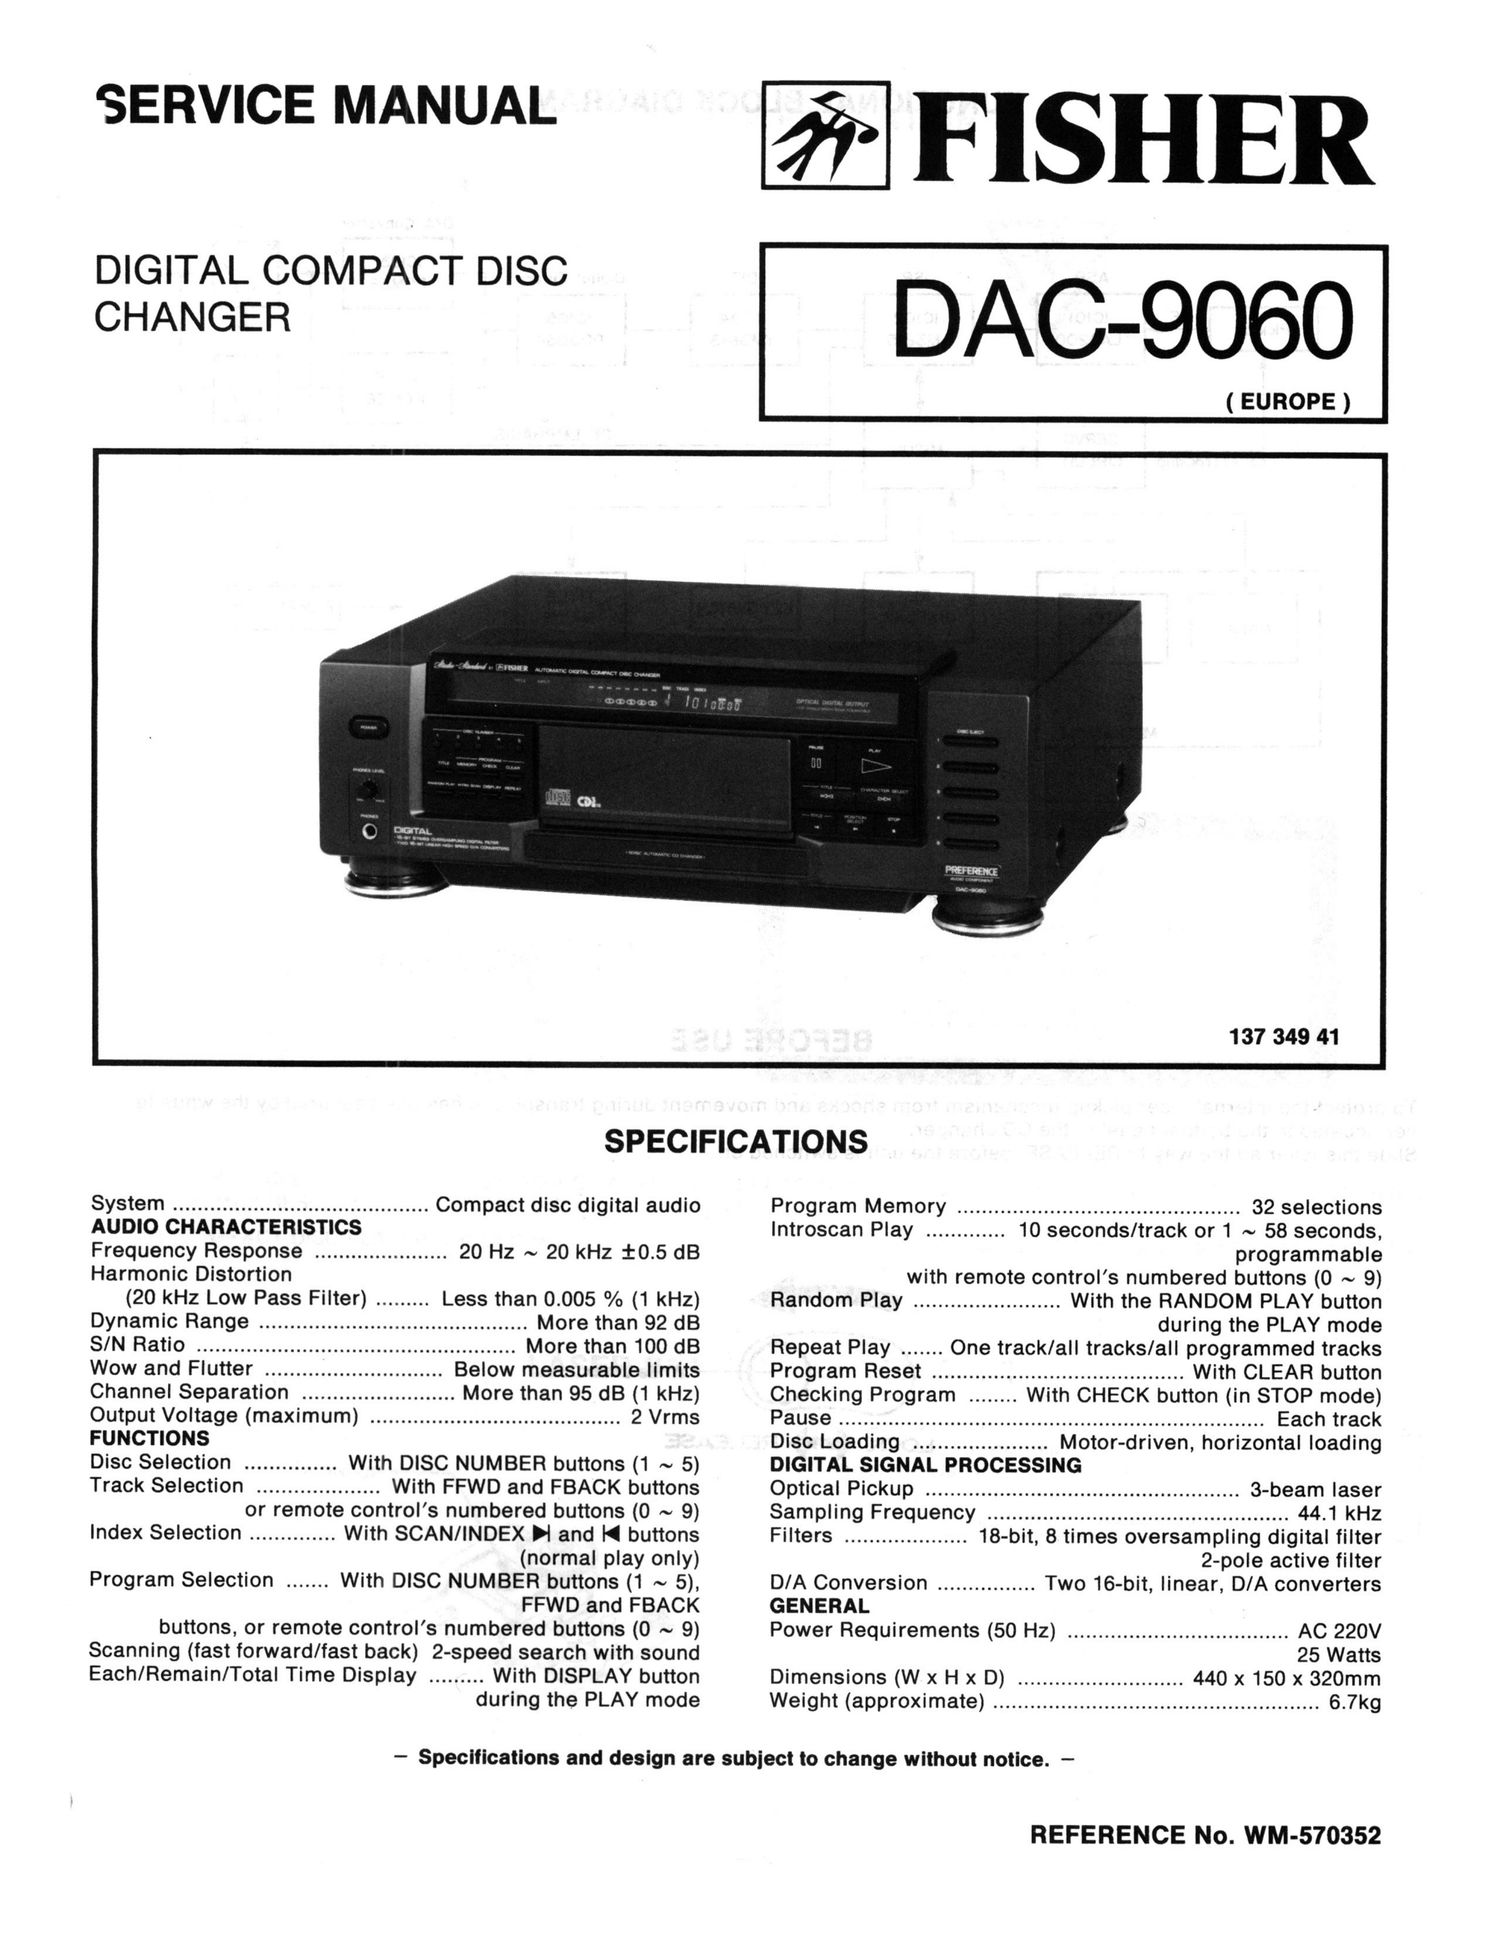 Fisher DAC 9060 Schematic